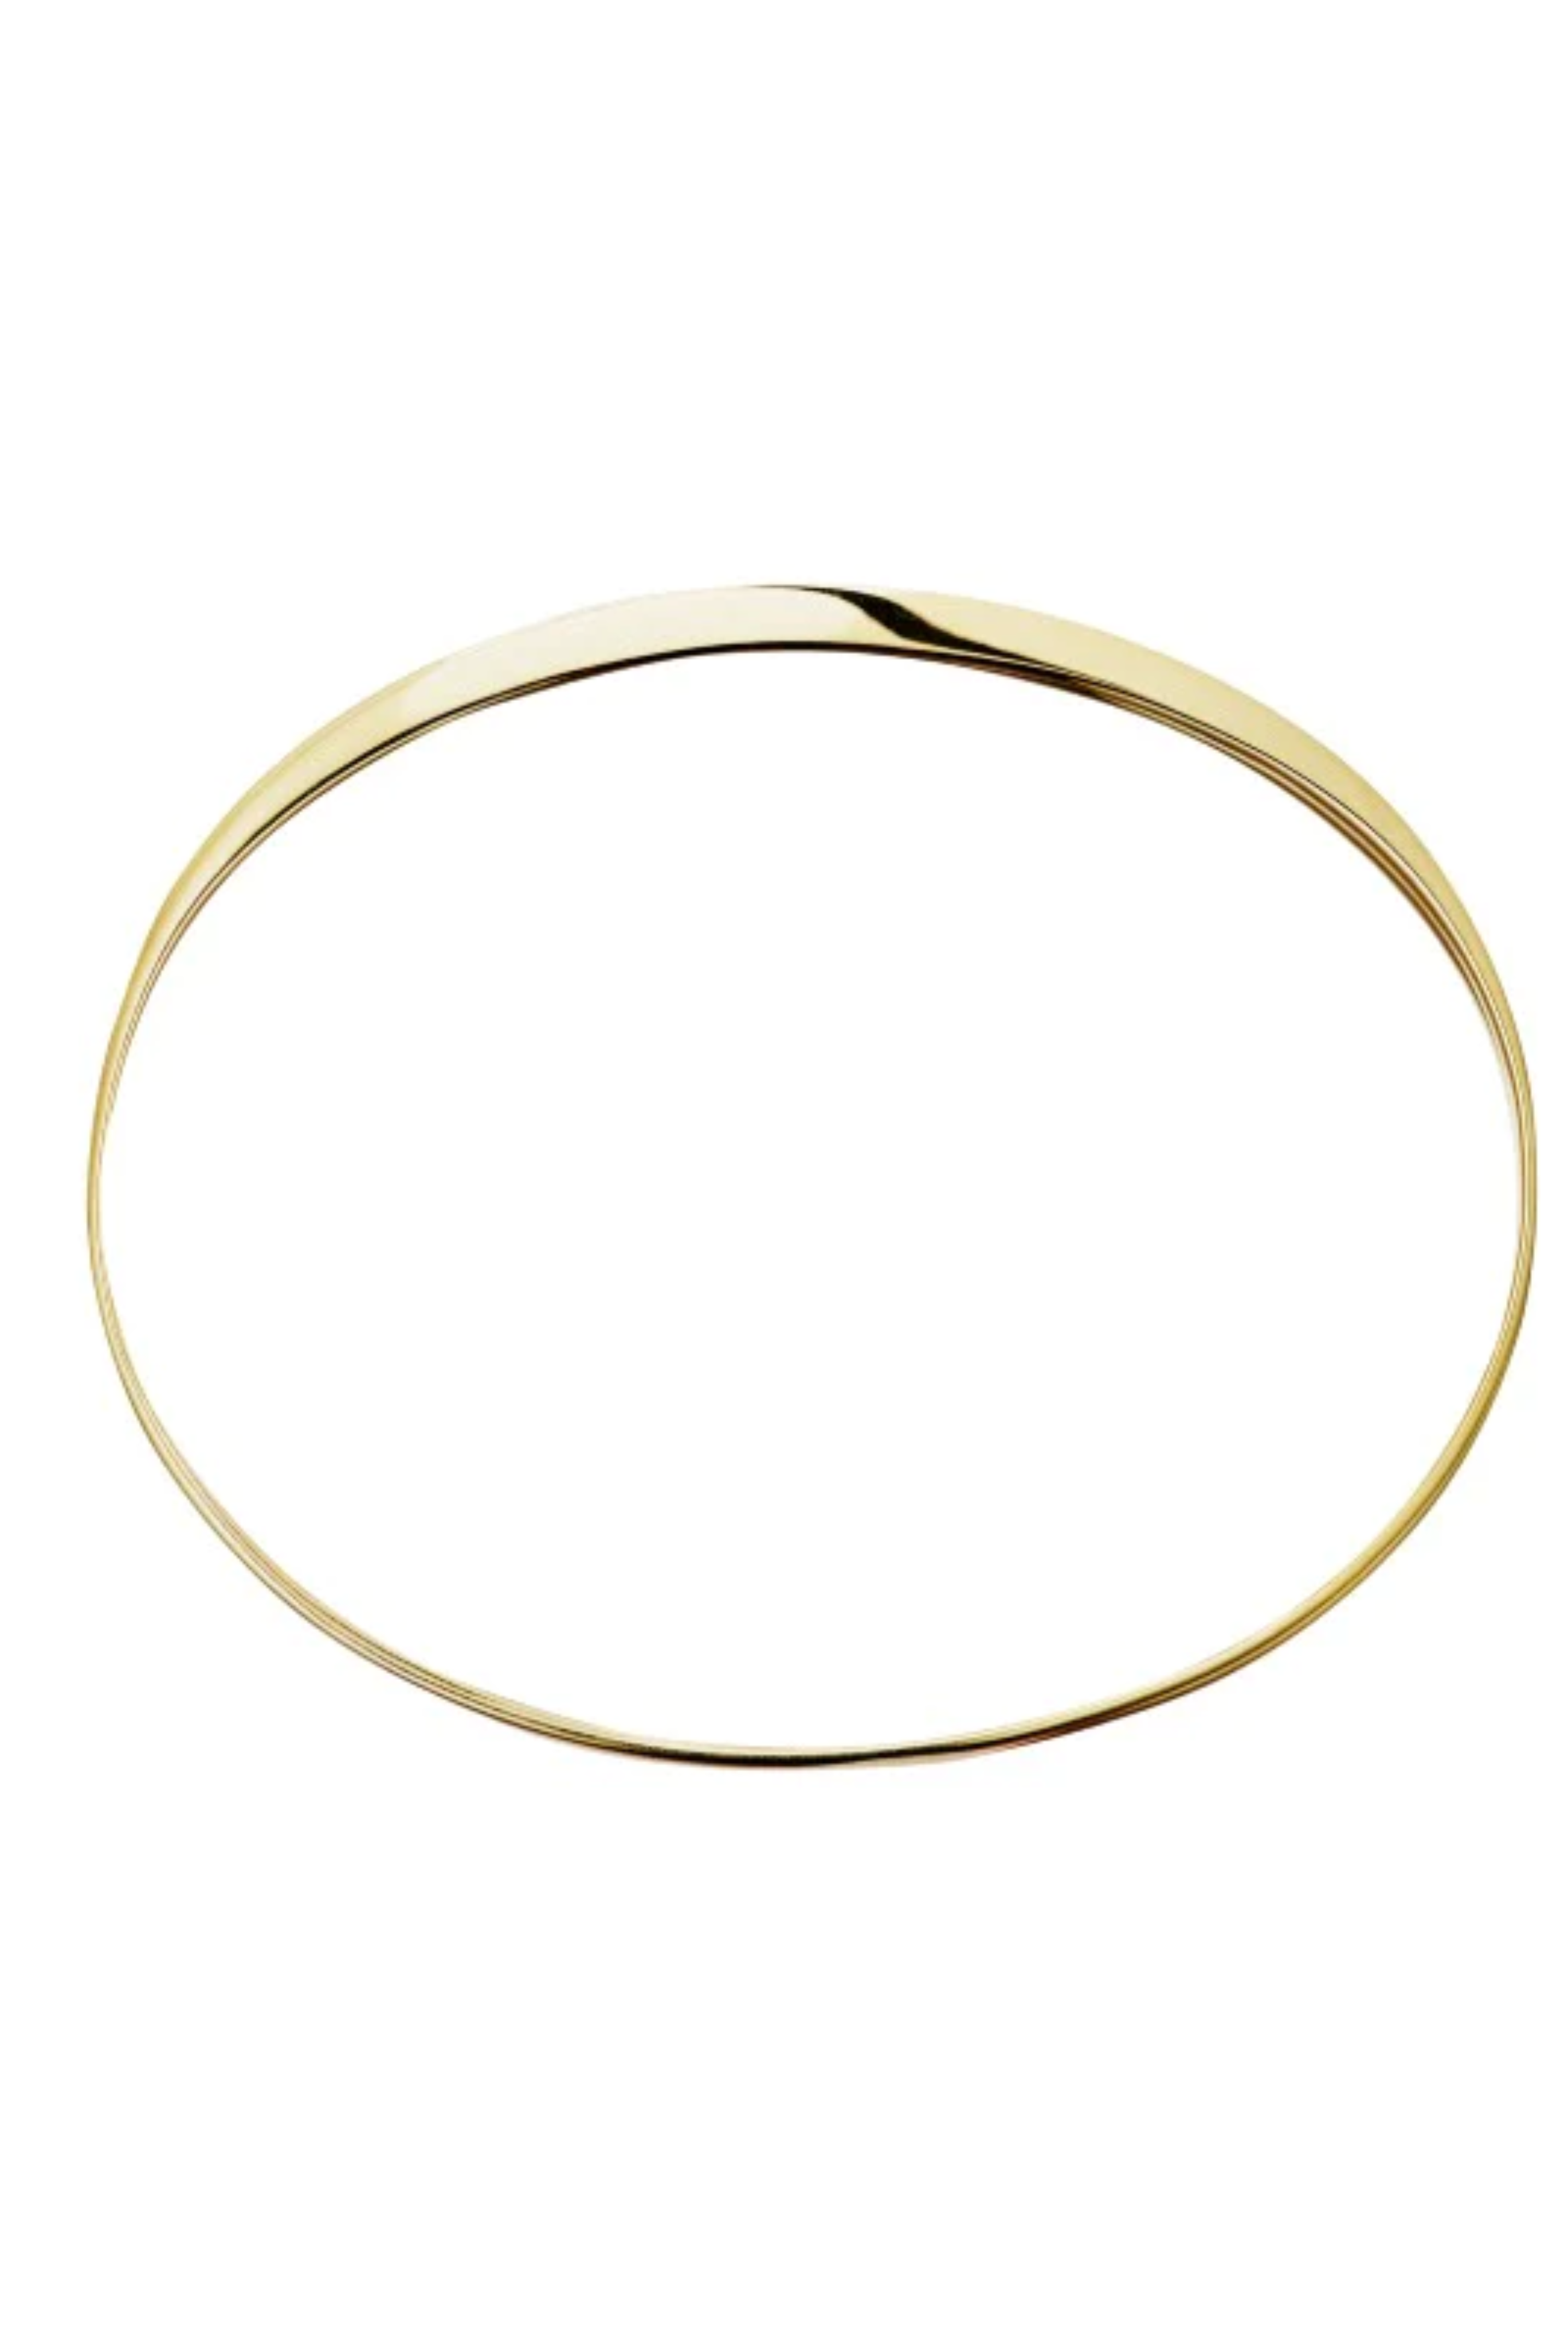 KINRADEN Gold Bangle Bracelet